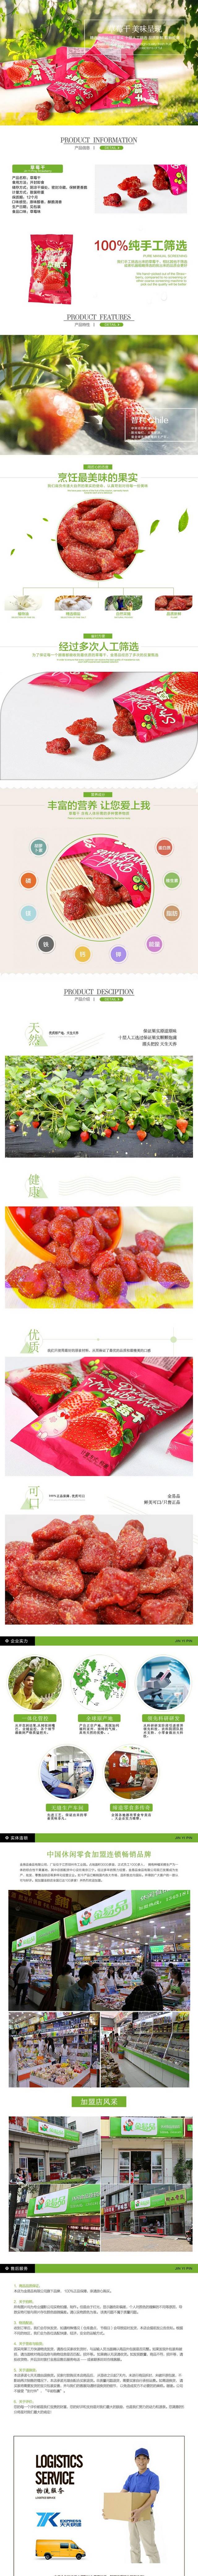 淘宝天猫草莓干详情页PSD模板